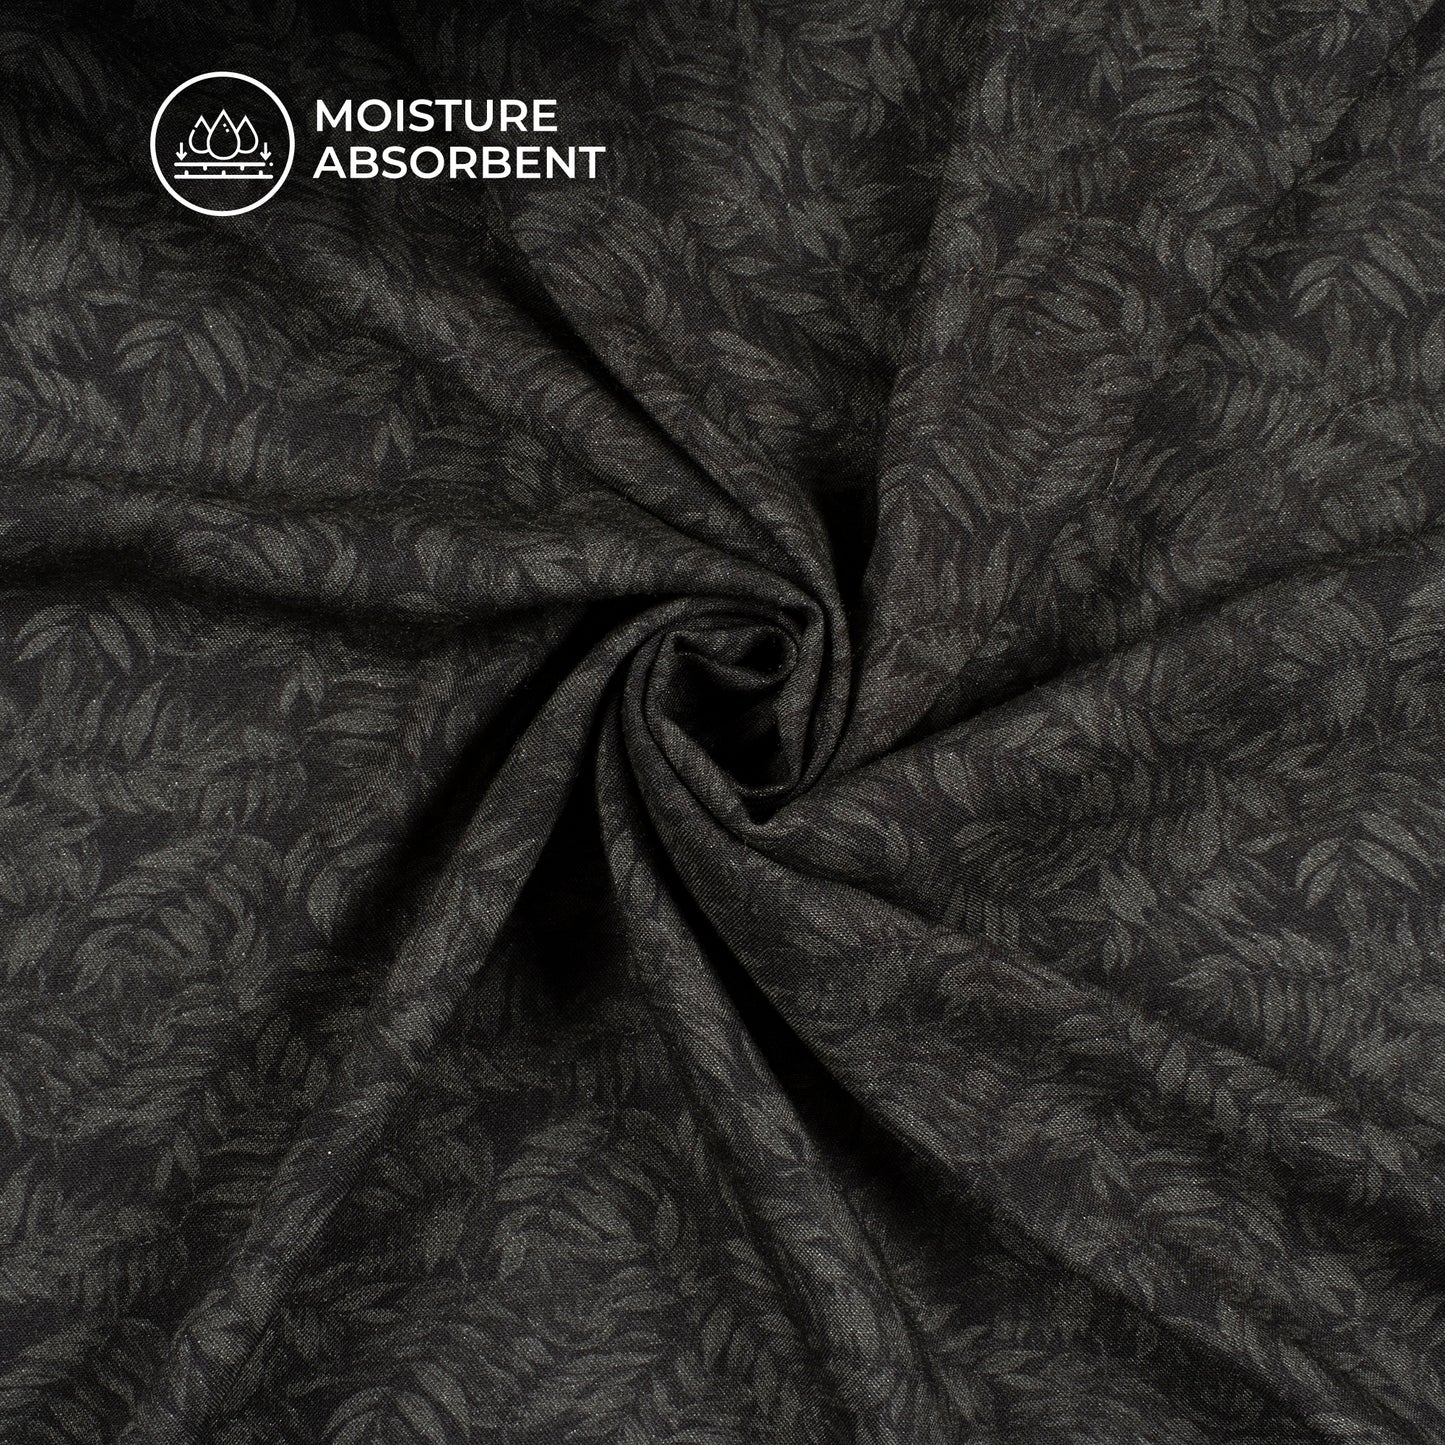 Black Leaf Digital Print Viscose Rayon Fabric (Width 58 Inches)